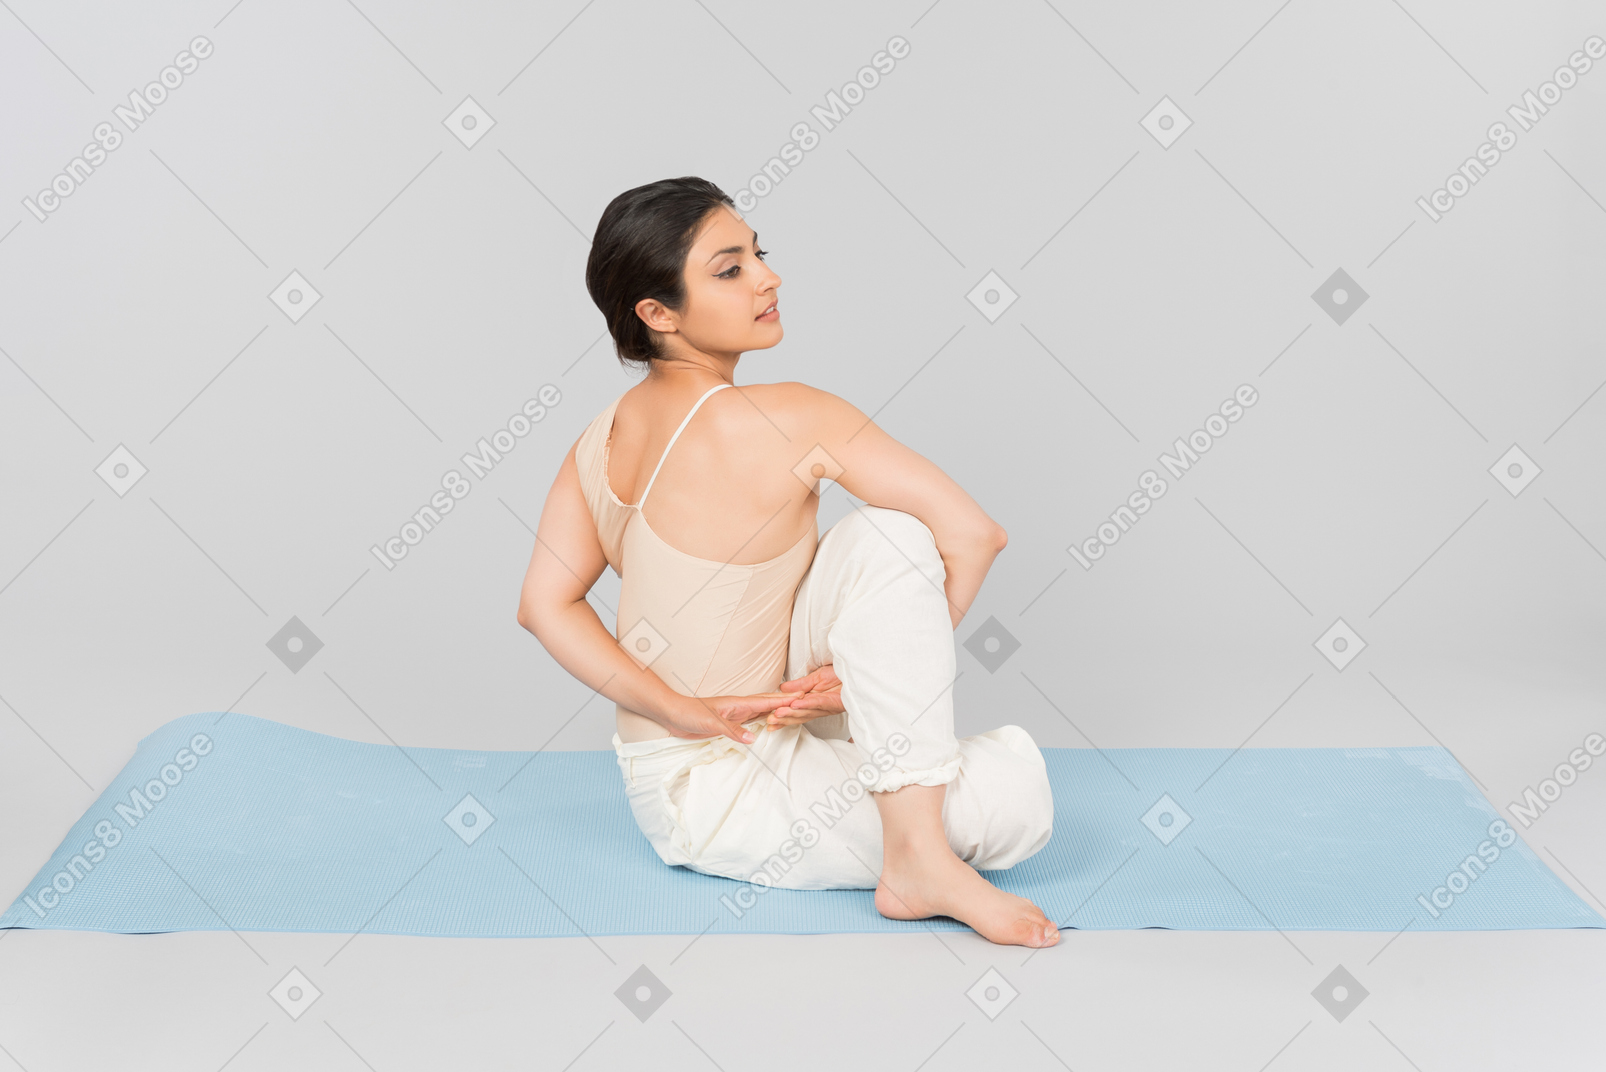 Jeune femme indienne assise sur un tapis de yoga